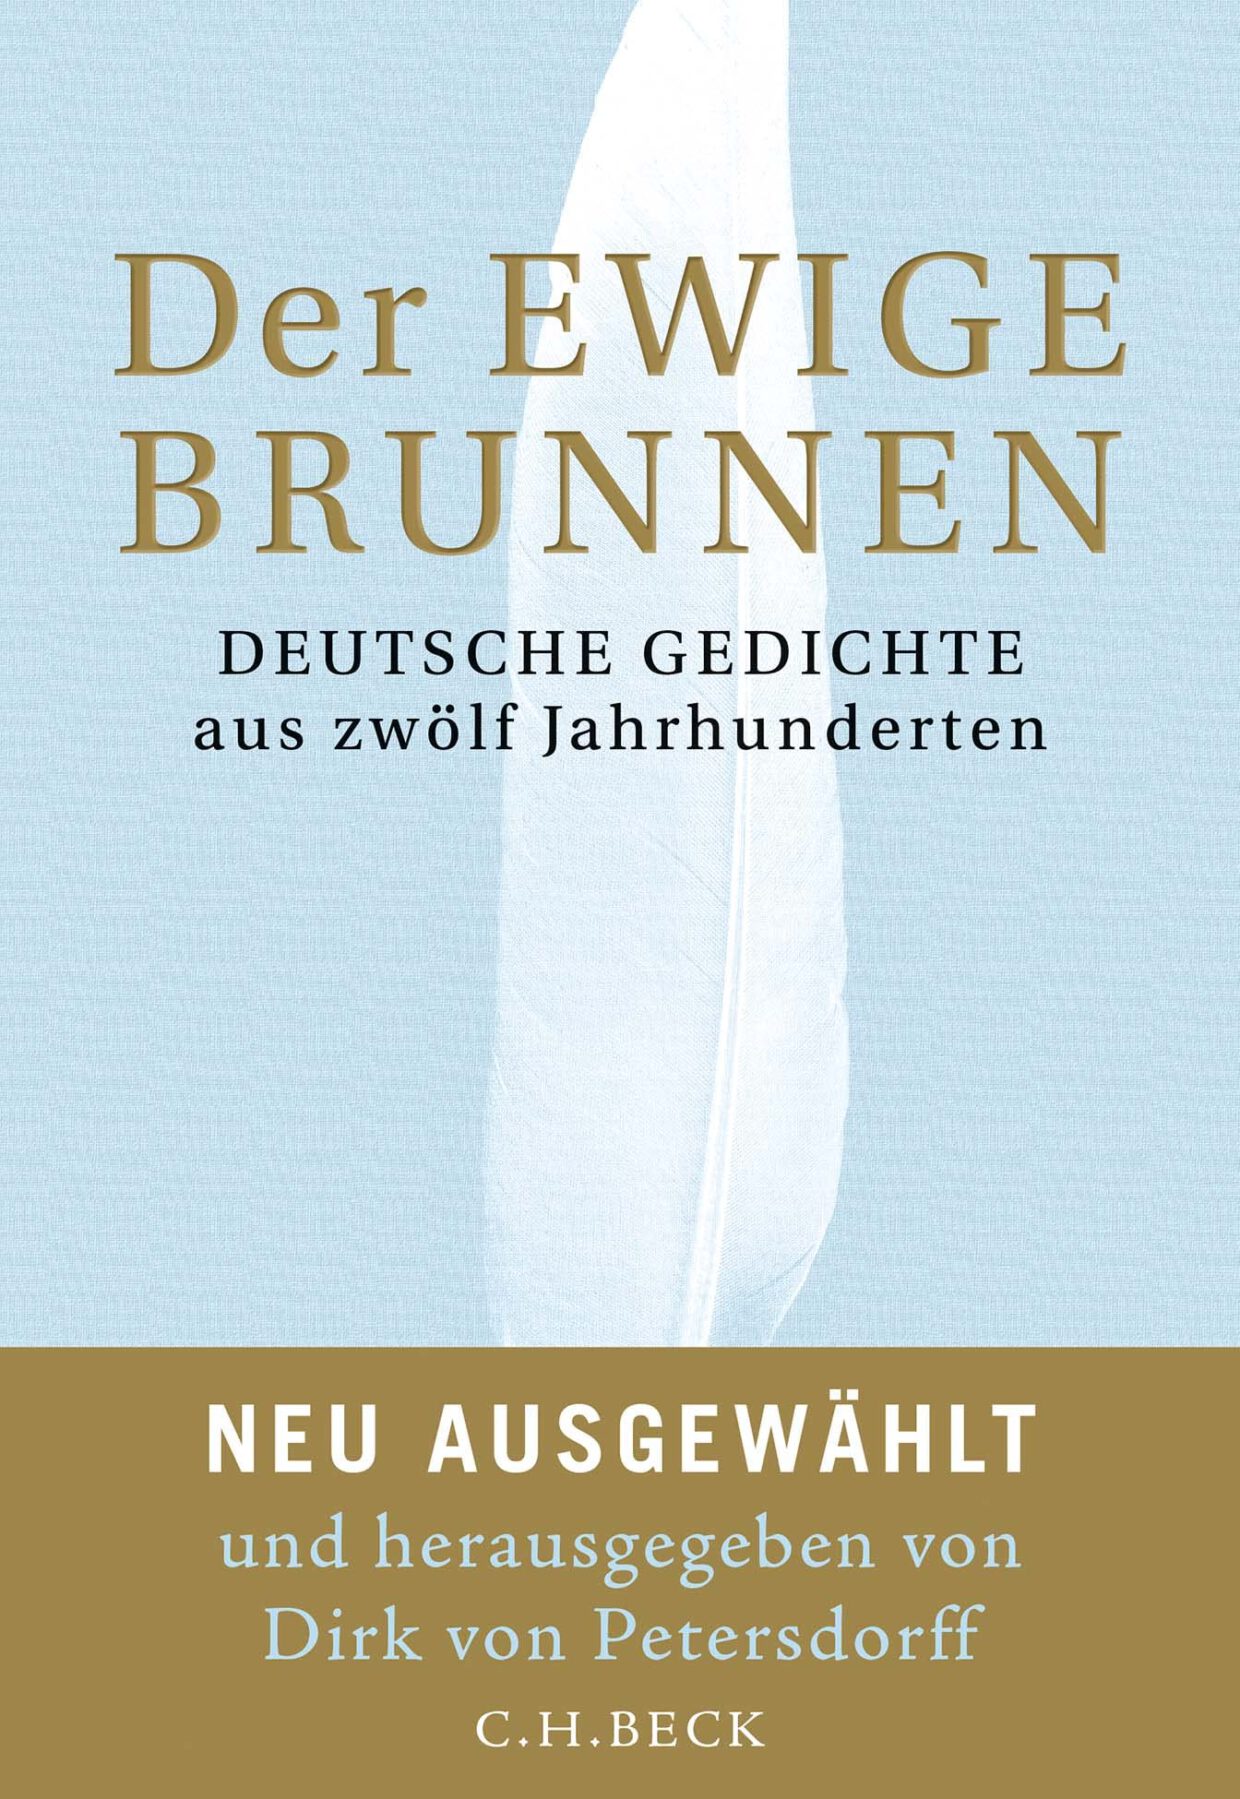 Dirk von Petersdorff (Hg.): Der ewige Brunnen